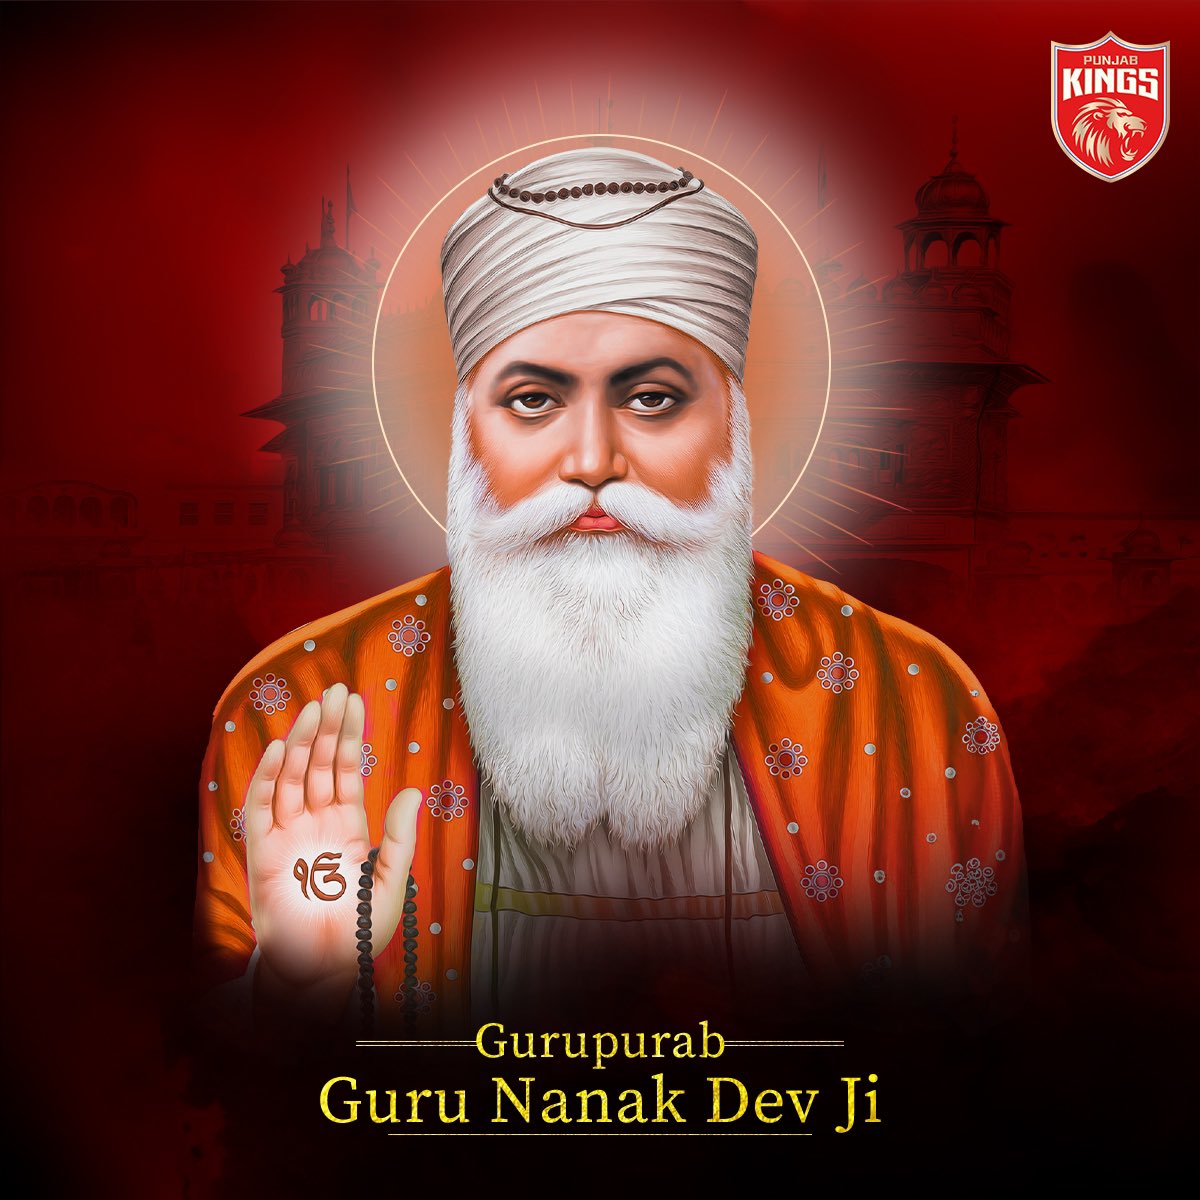 Satguru Nanak pargateya, miti dhundh jagg chanan hoya. ✨ Guru Nanak Dev Ji de Prakash Purab diyan lakh lakh vadhaiyaan! 🙏 #HappyGuruNanakJayanti #SaddaPunjab #PunjabKings